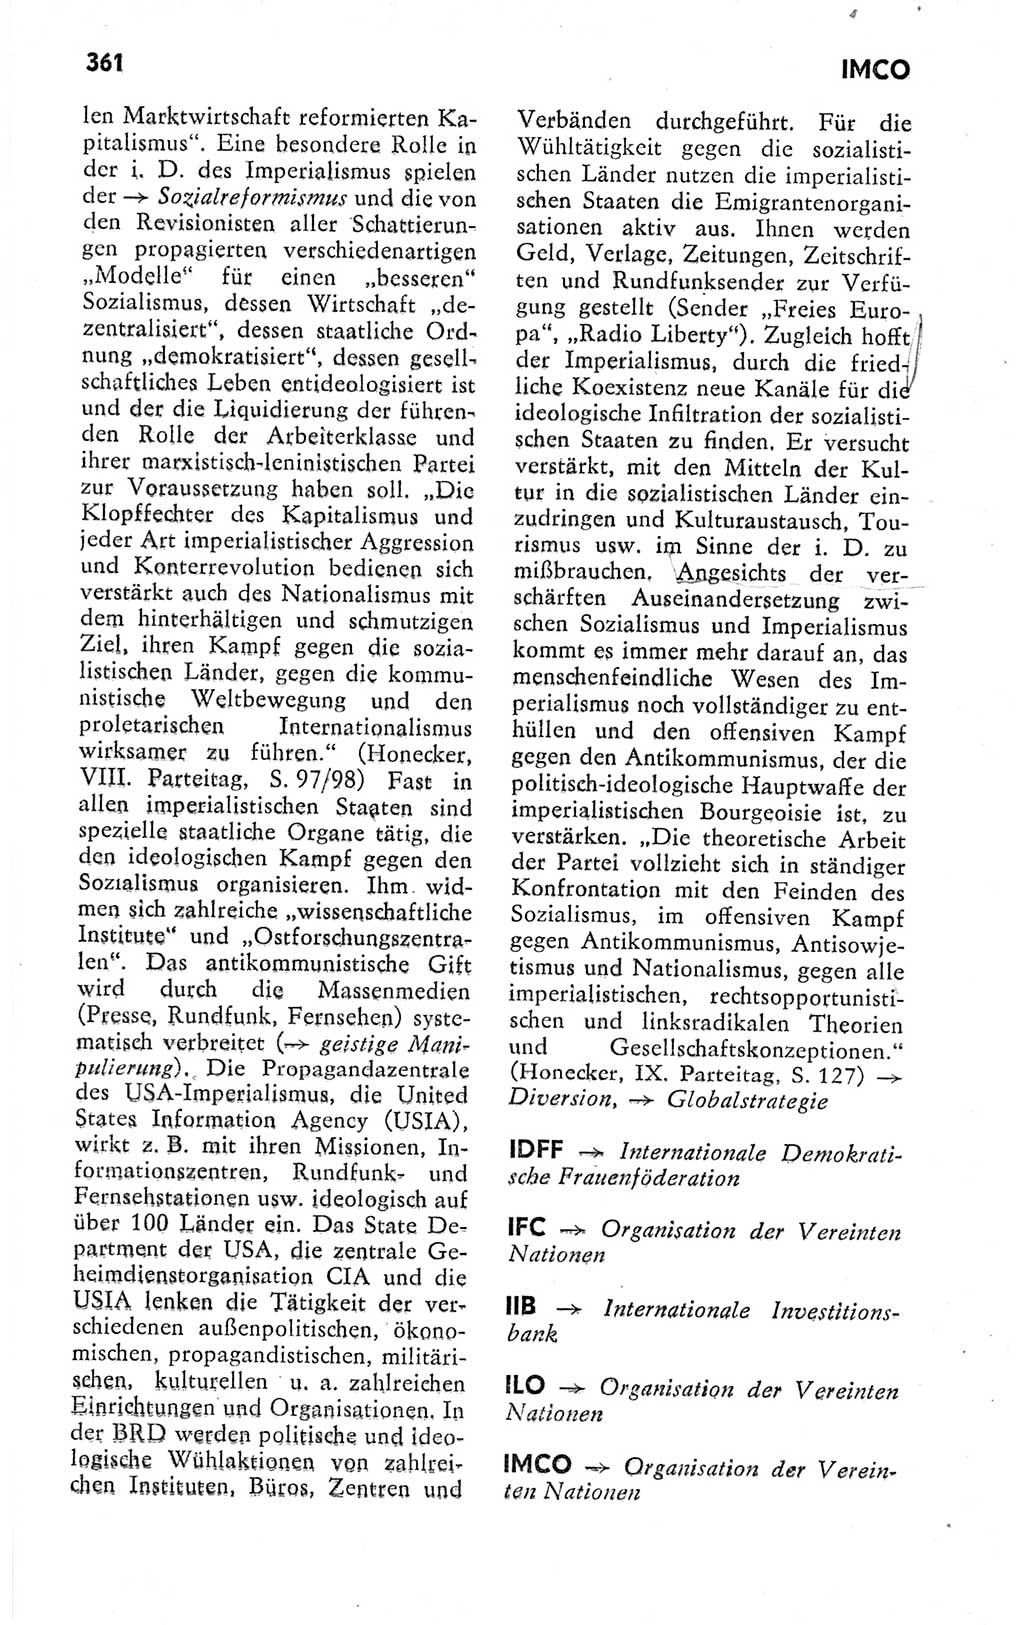 Kleines politisches Wörterbuch [Deutsche Demokratische Republik (DDR)] 1978, Seite 361 (Kl. pol. Wb. DDR 1978, S. 361)